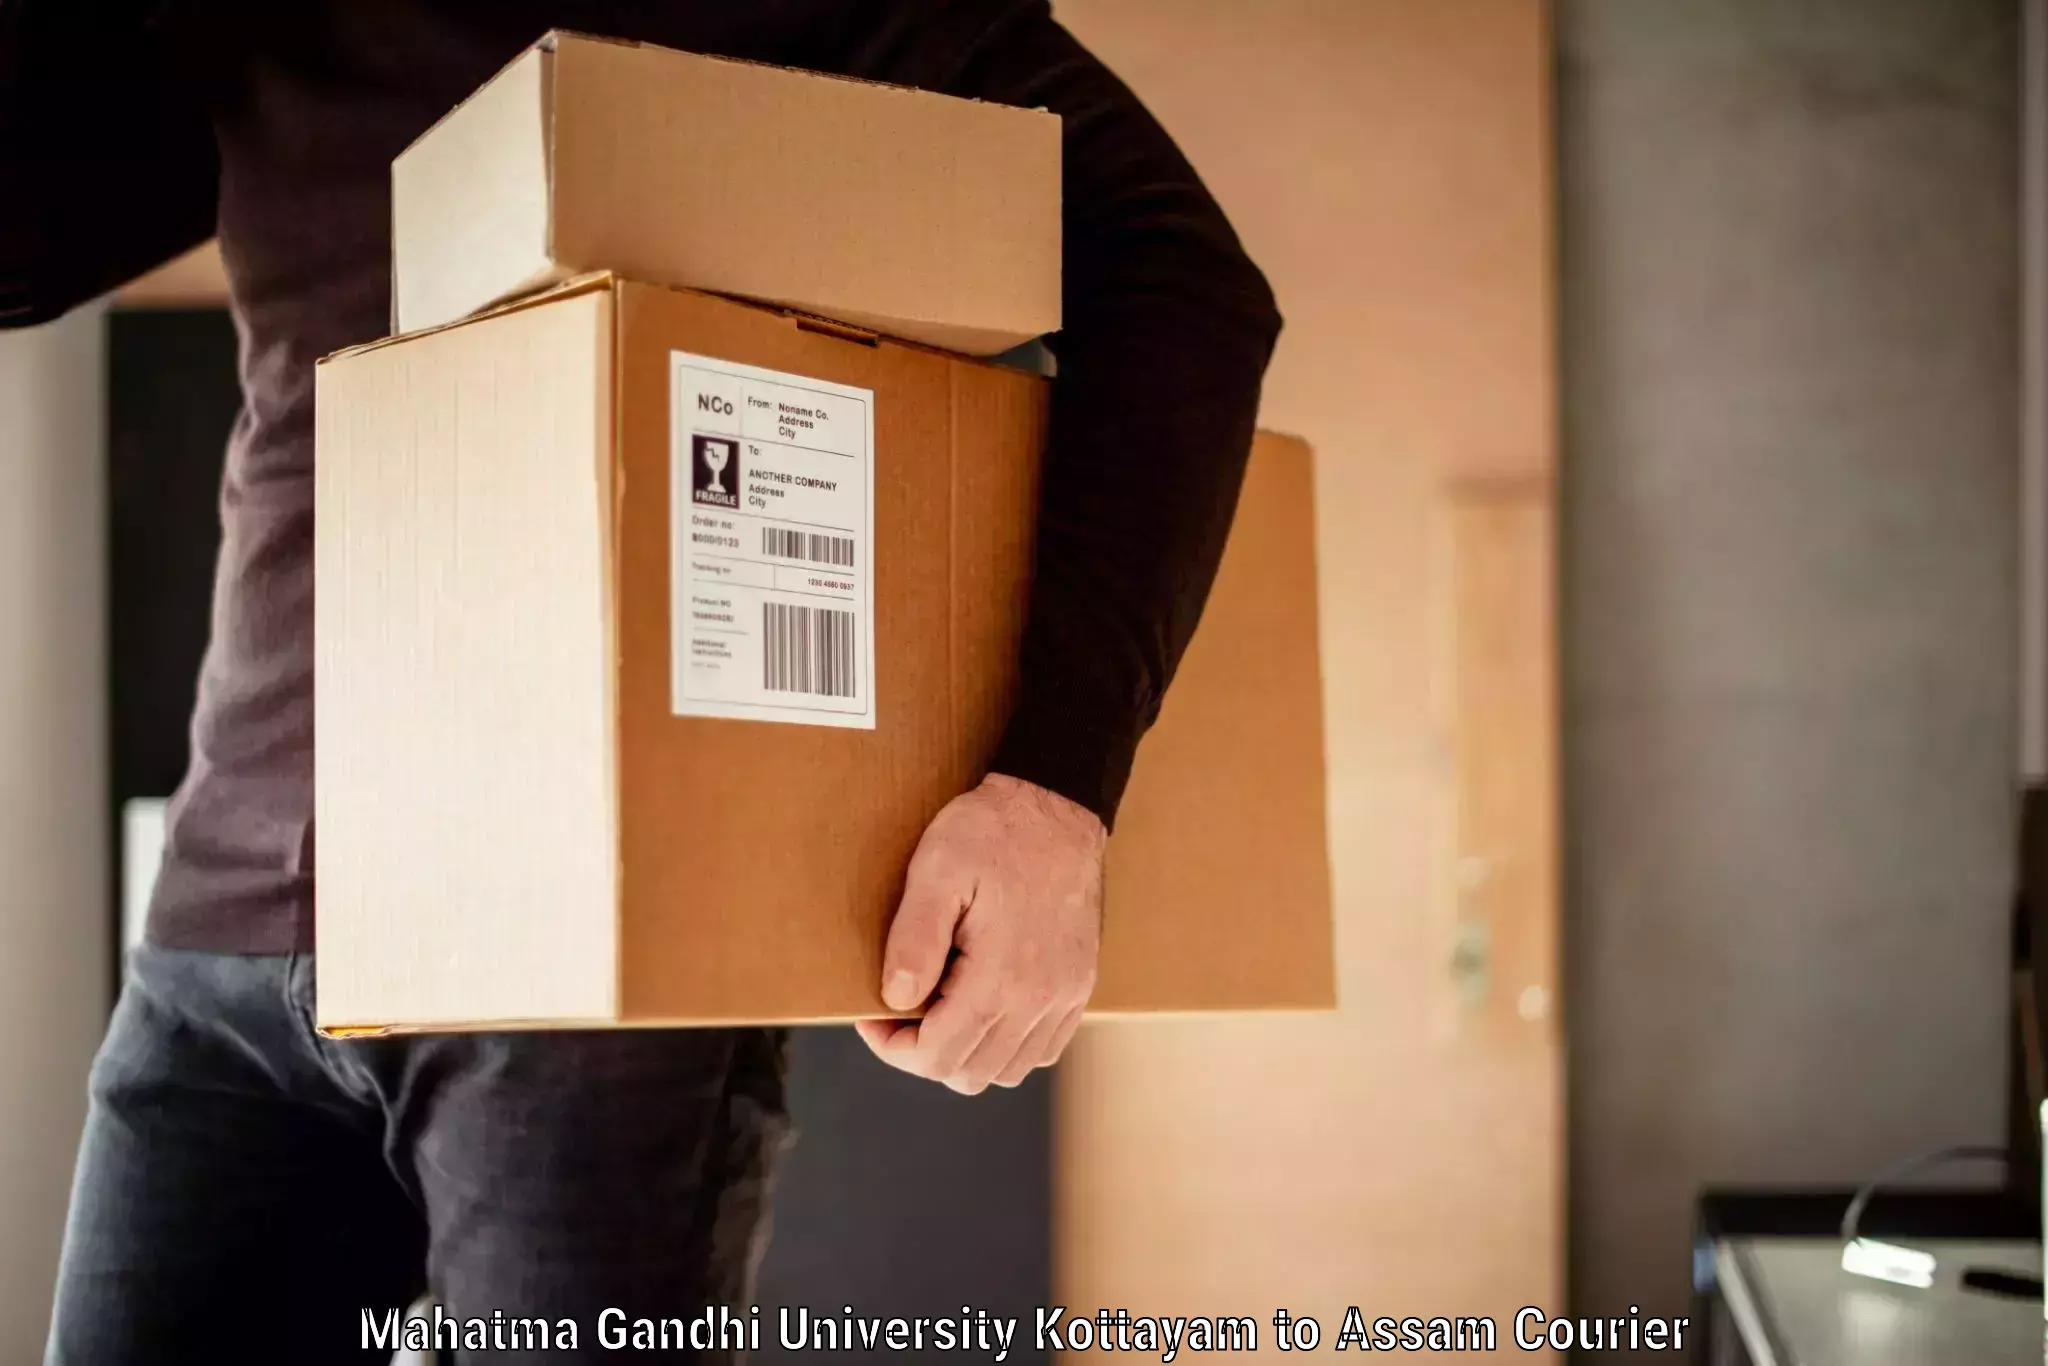 Luggage transport company Mahatma Gandhi University Kottayam to Agomani